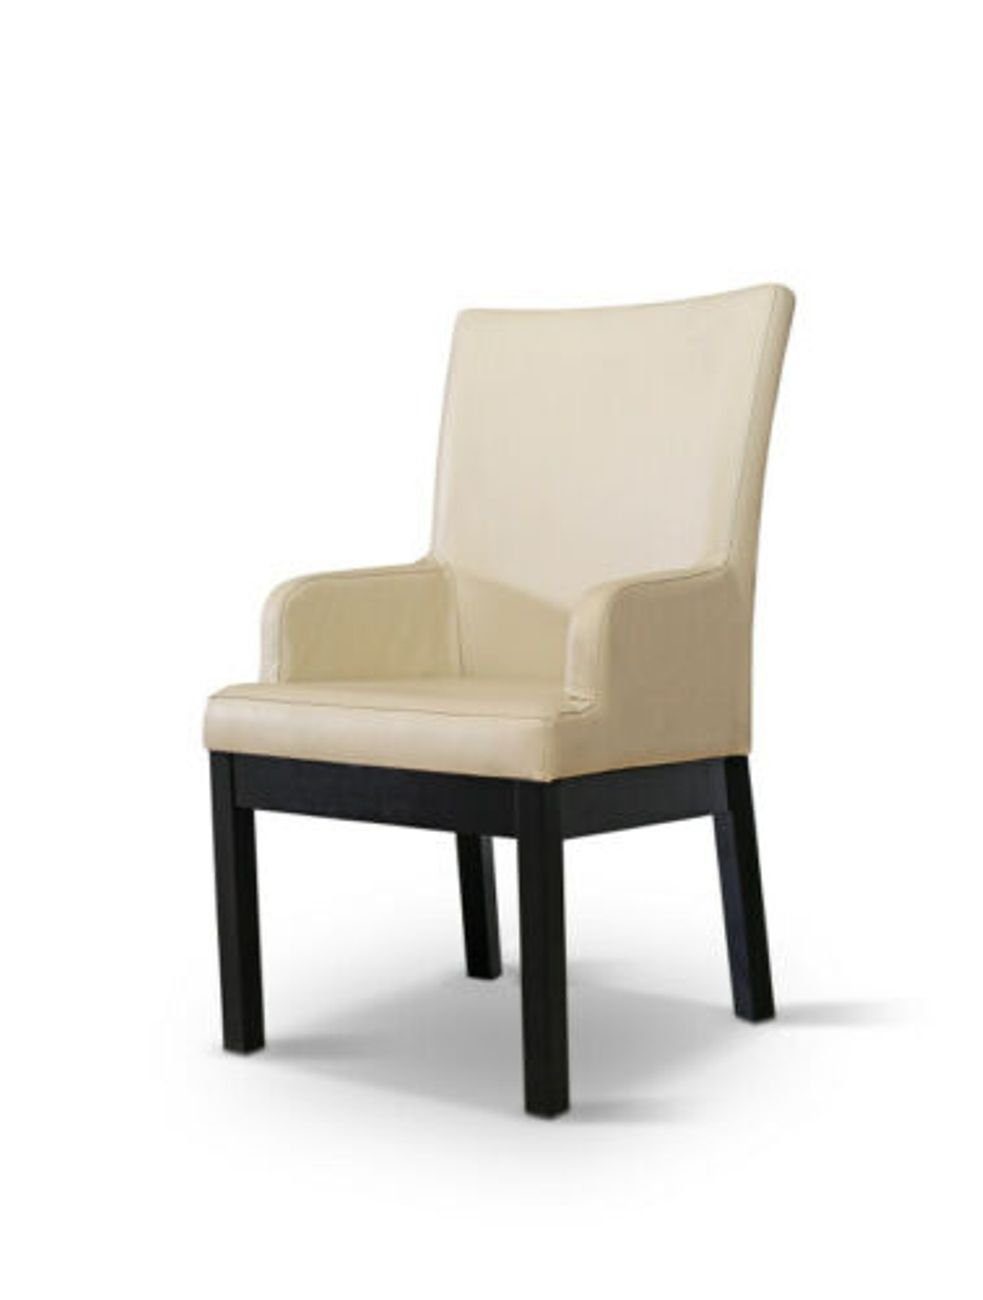 JVmoebel Stühle Stuhl Gastro Set 2x Polster Holz 100% Design Leder Esszimmersessel, Sessel